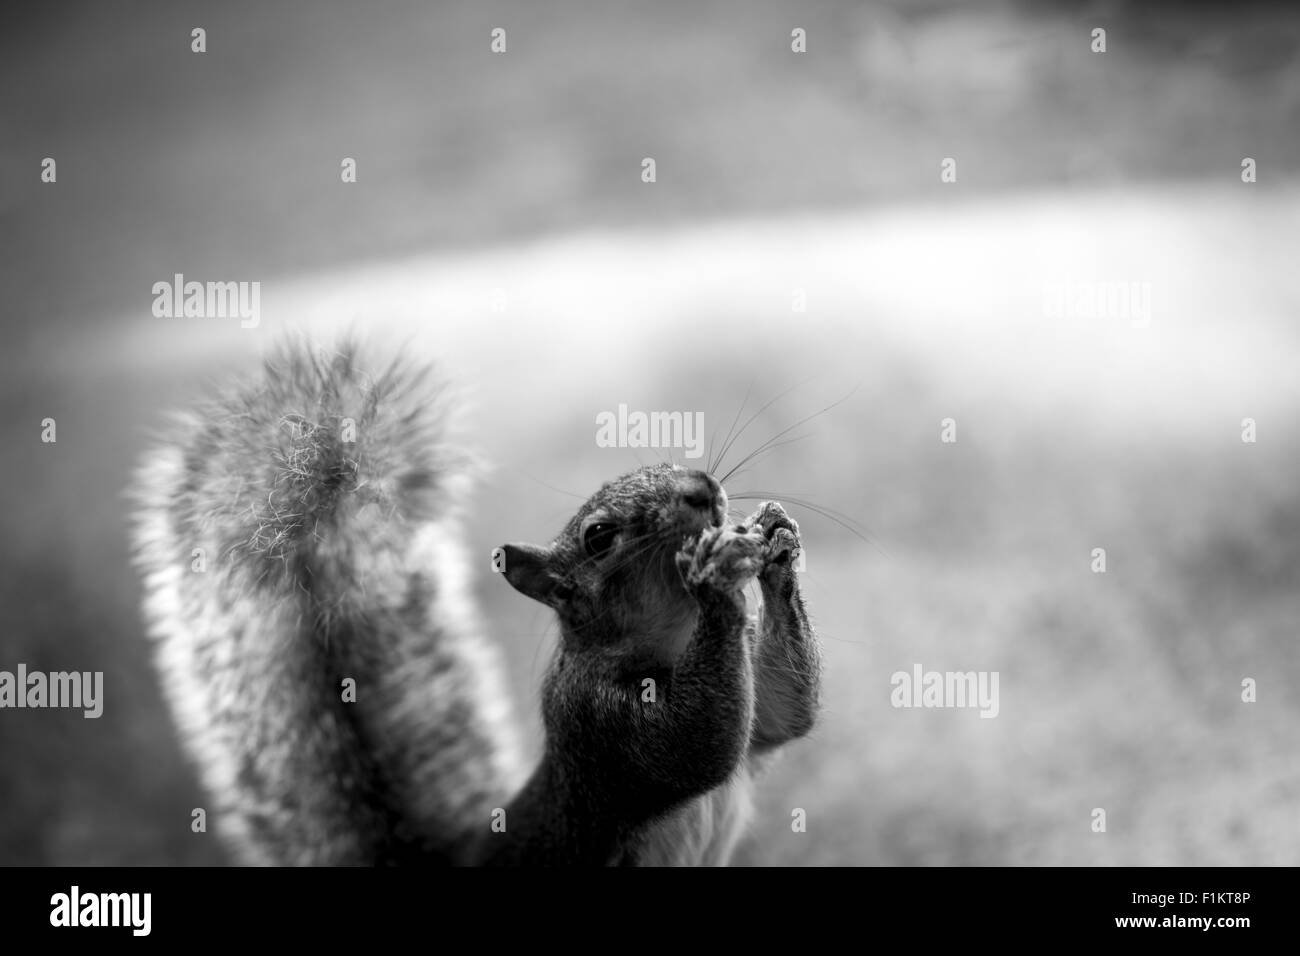 Photo d'un écureuil mangeant une noix Banque D'Images